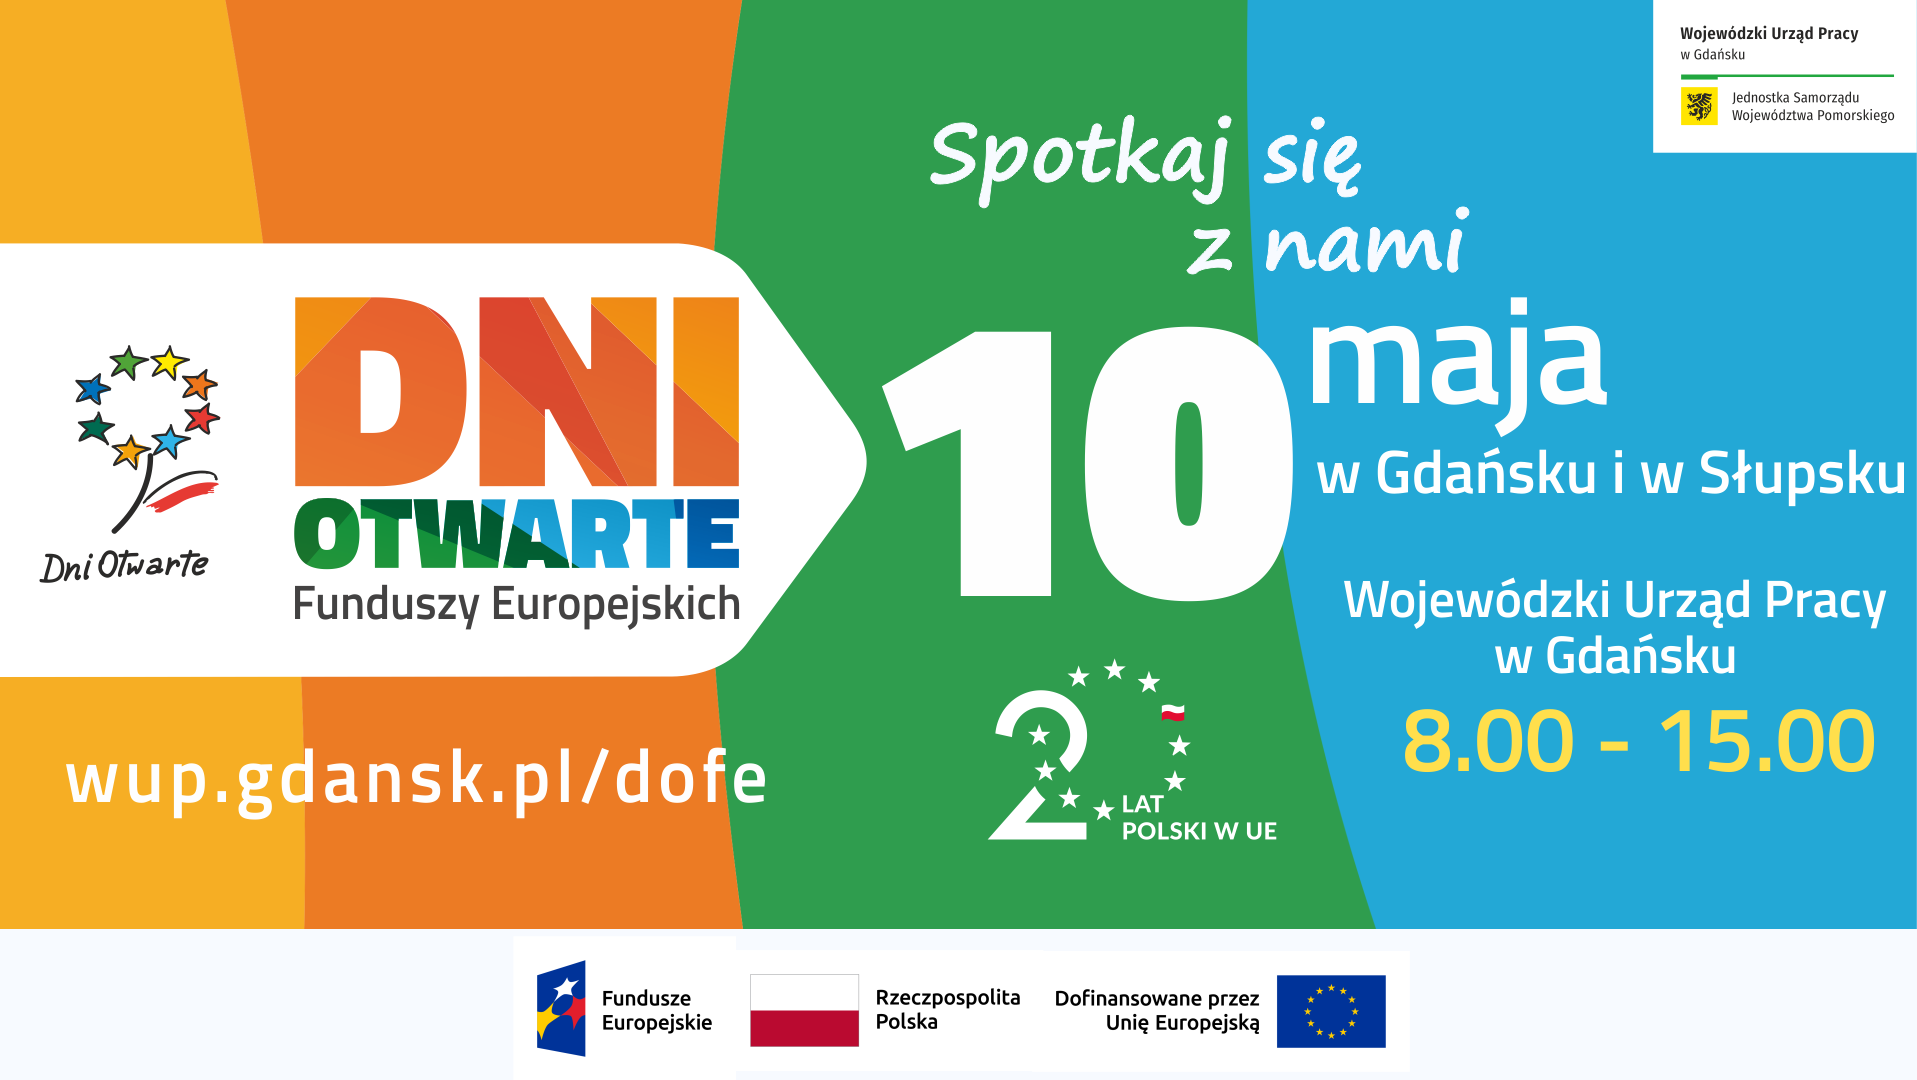 10 maja świętujemy Dni Otwarte Funduszy Europejskich w Gdańsku i w Słupsku